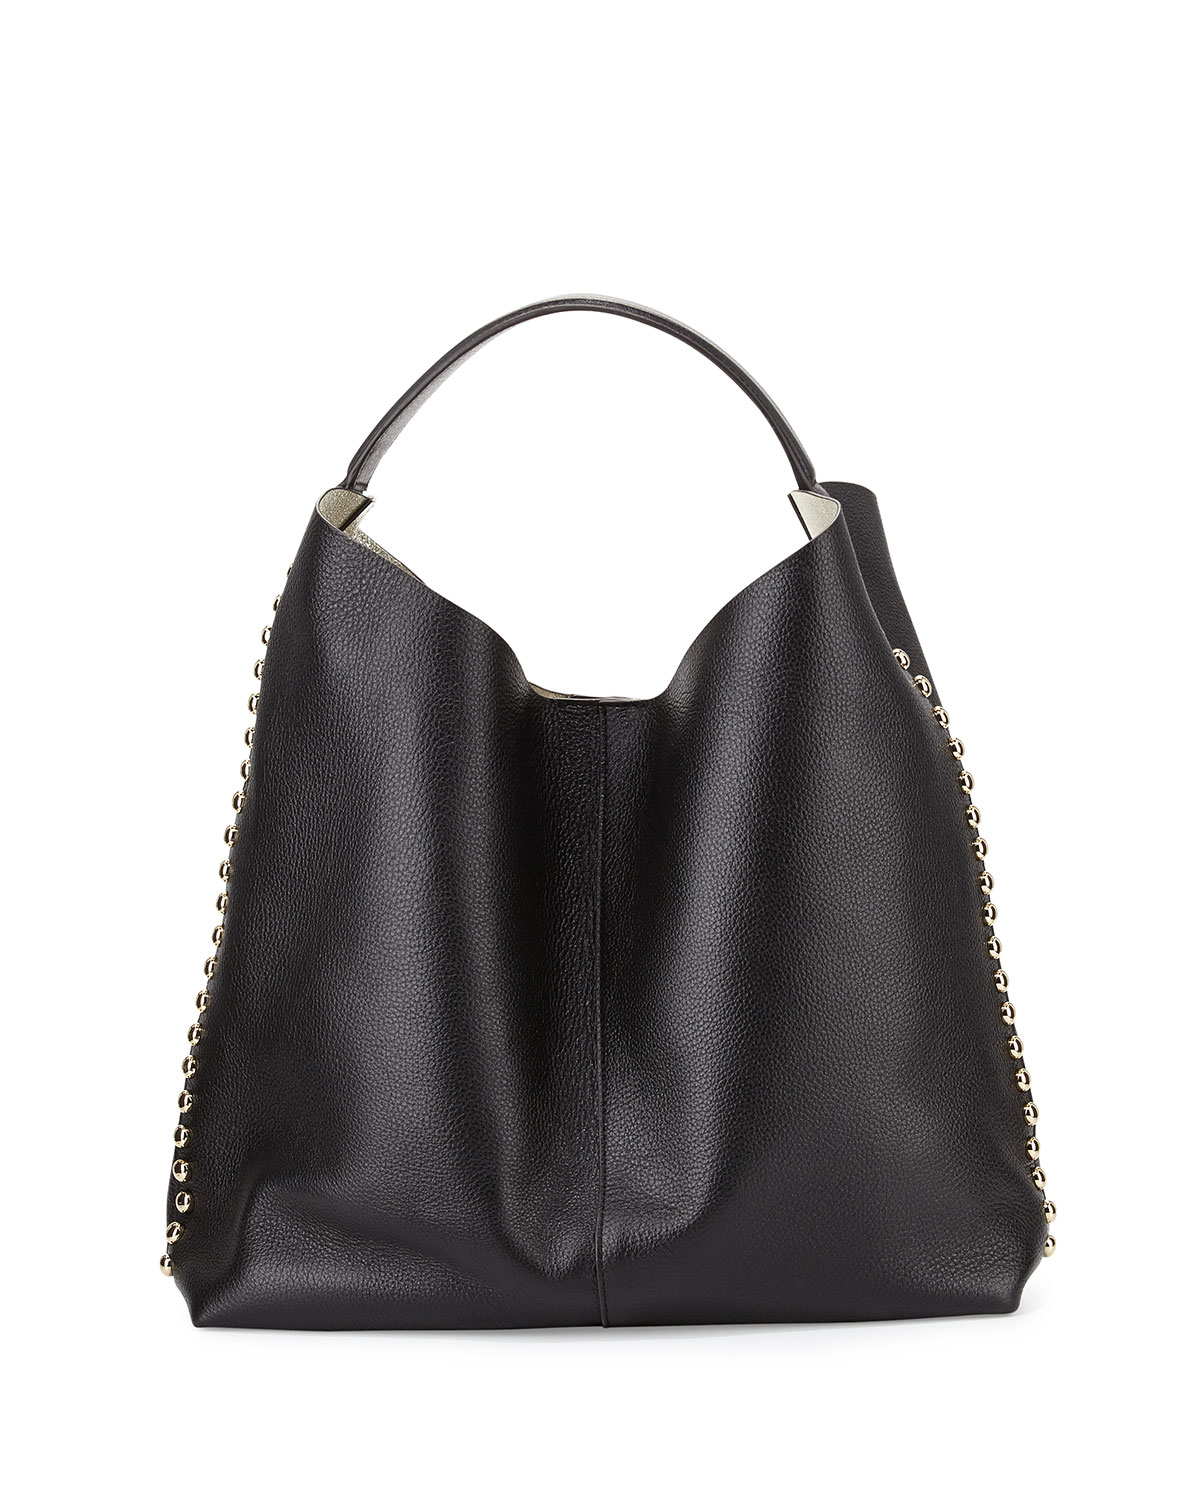 Rebecca minkoff Stud-Trim Leather Hobo Bag in Black | Lyst